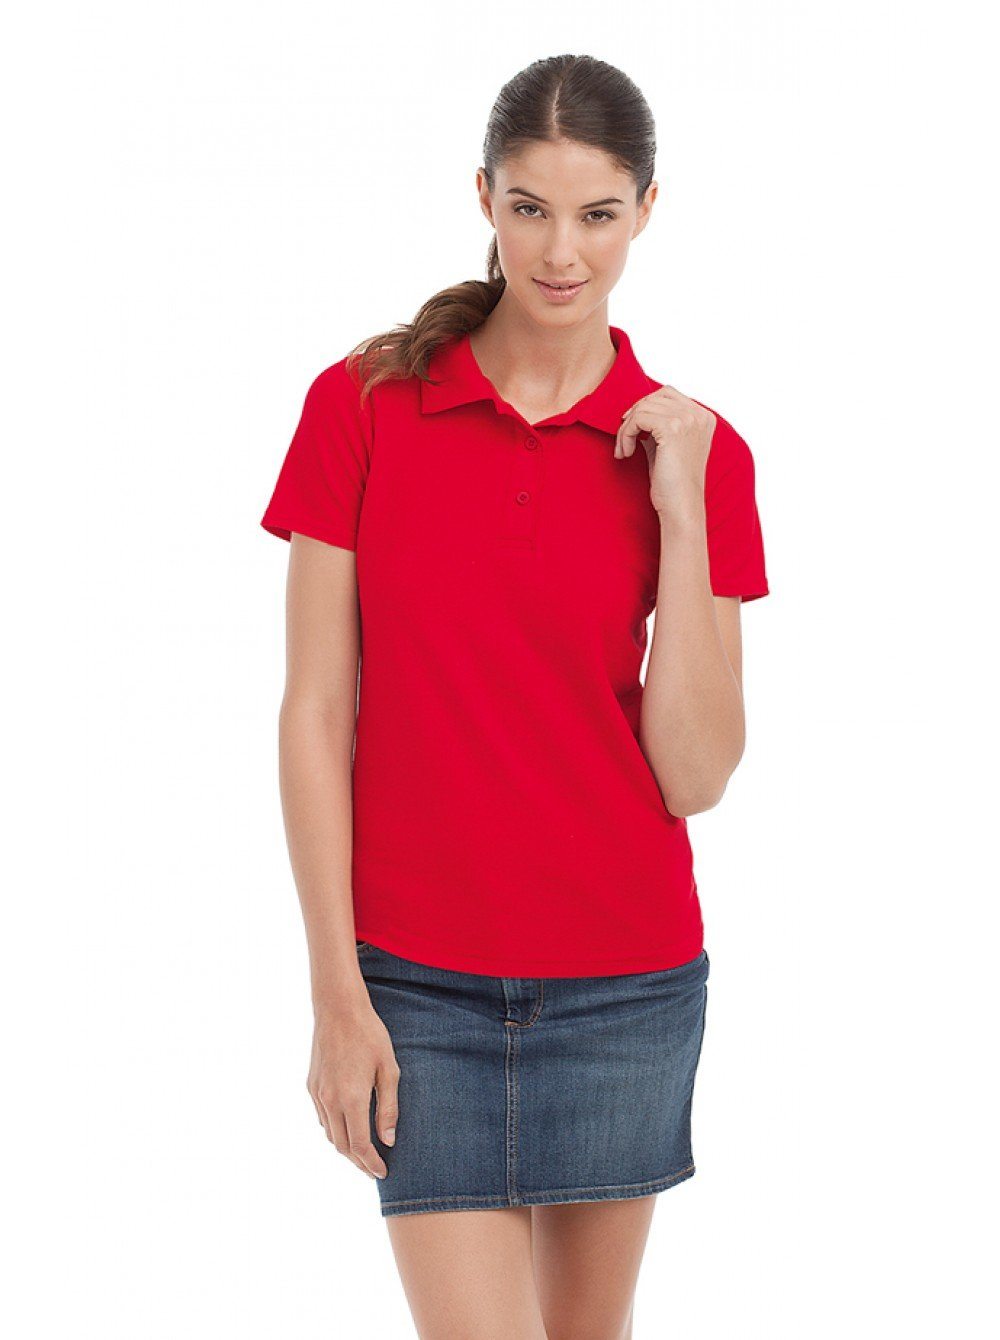 Вырез поло. Красная футболка женская поло с воротником. Воротник поло женский. Футболка поло с юбкой. Топ с воротником поло.